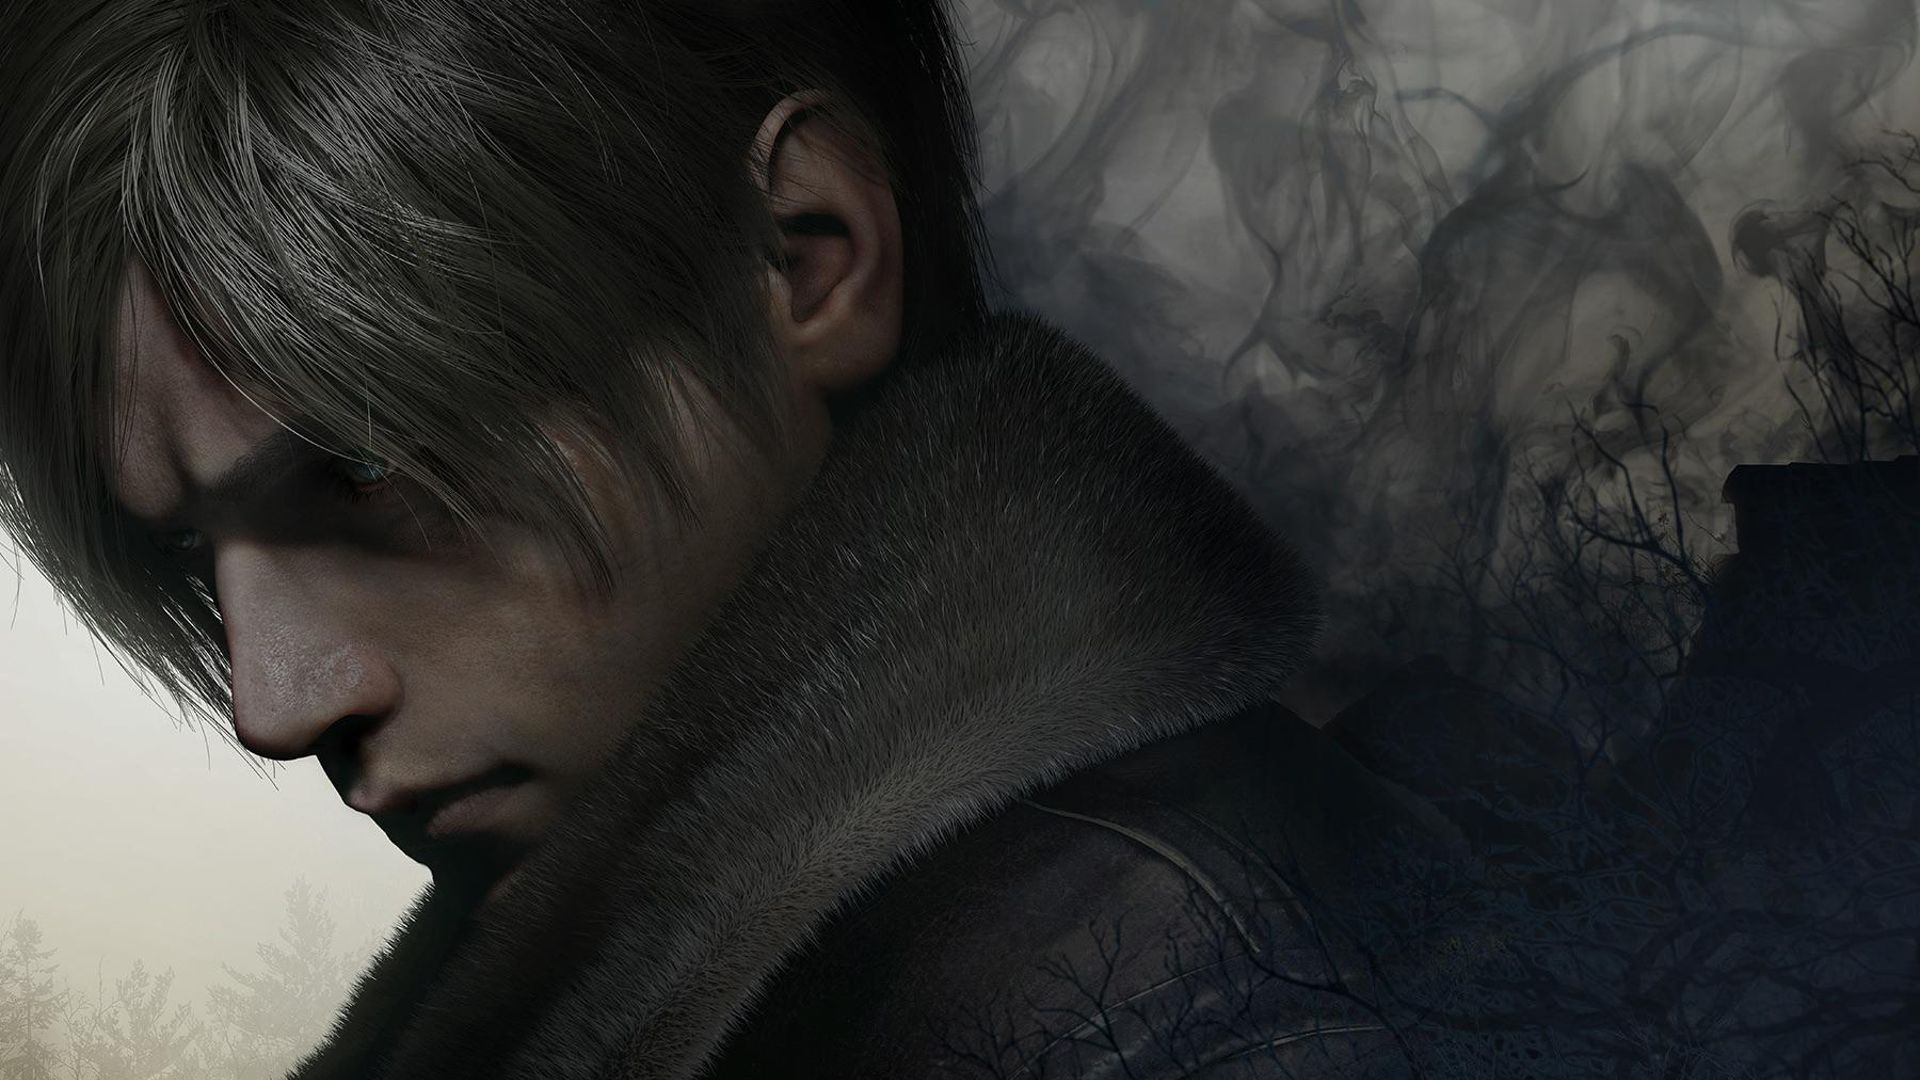 Walkthrough - Resident Evil 2 Remake Guide - IGN